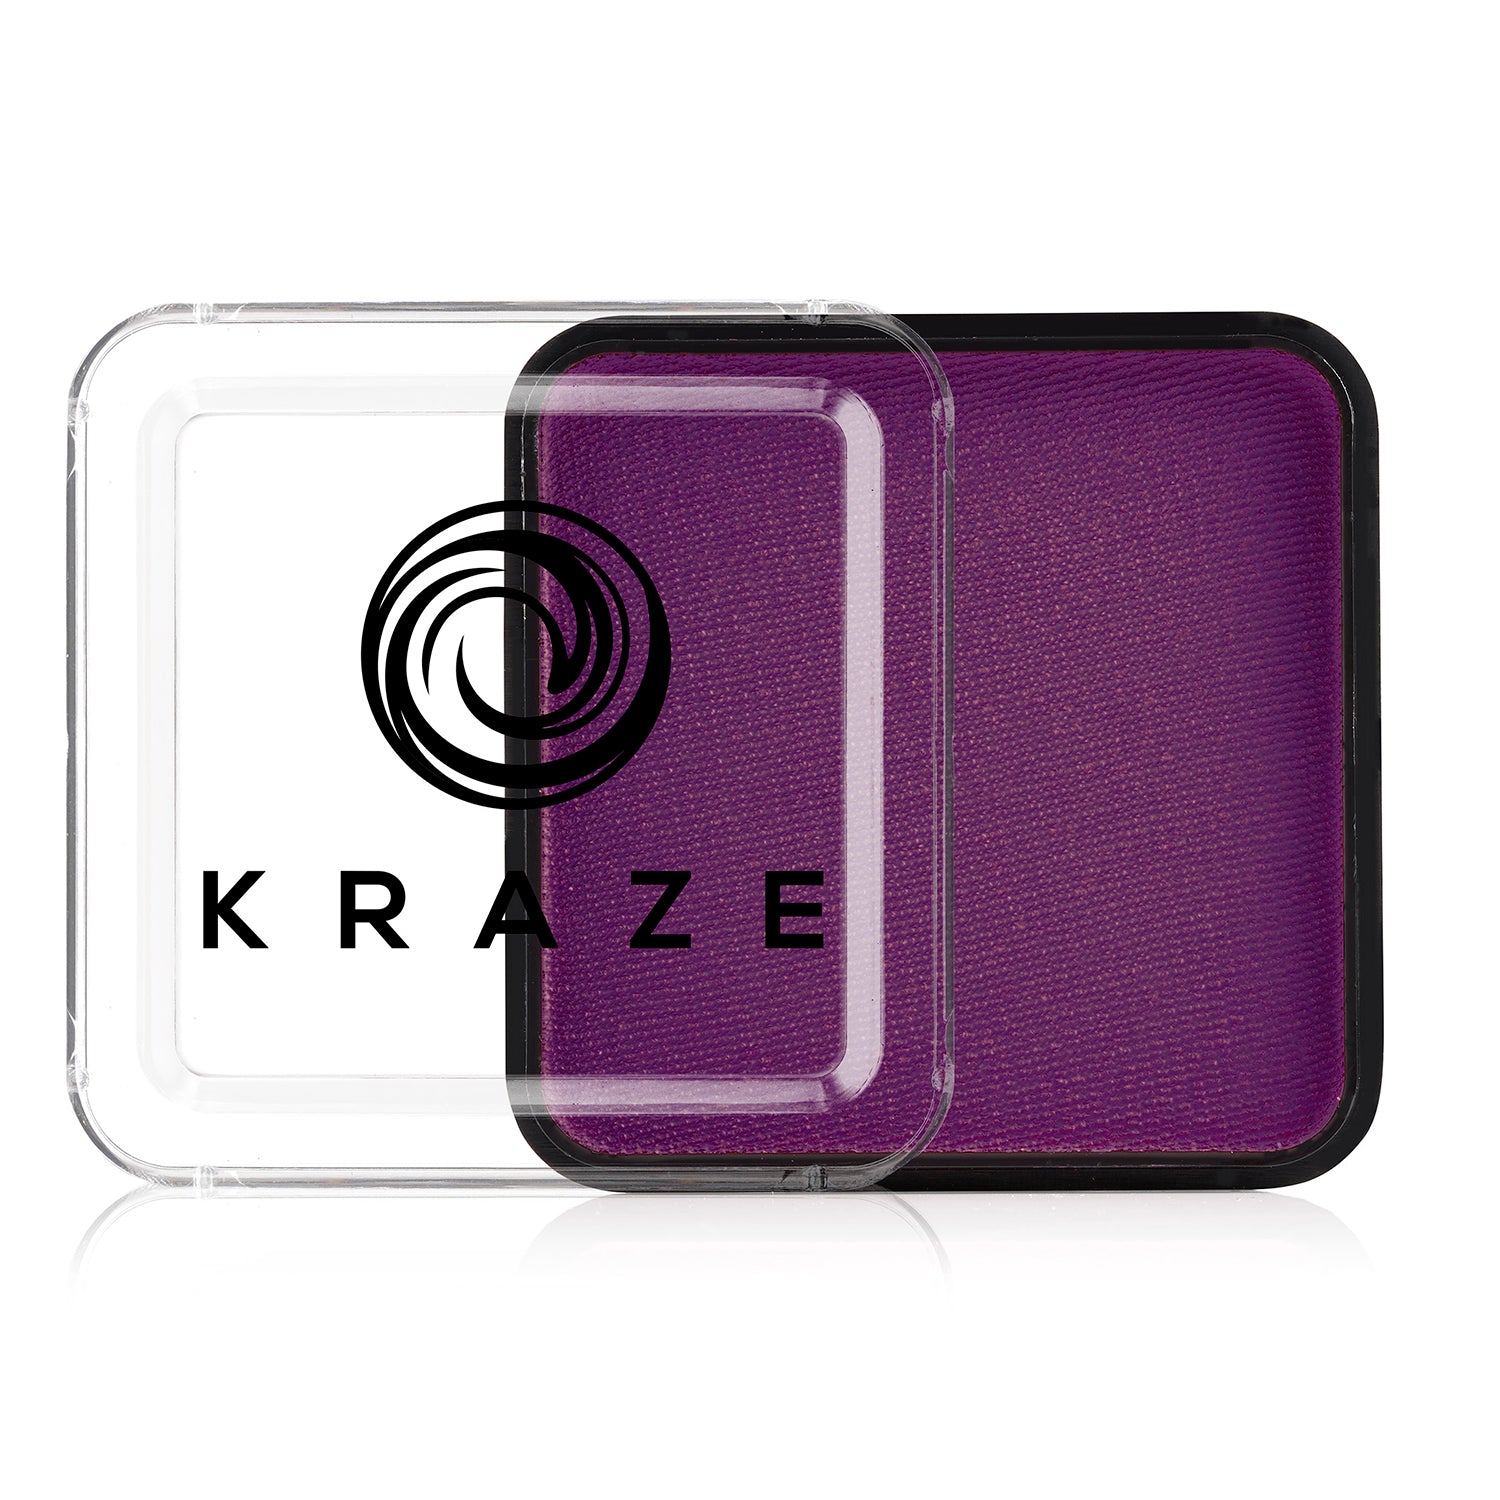 Kraze FX Face Paint - 25 gm - Metallic Deep Purple